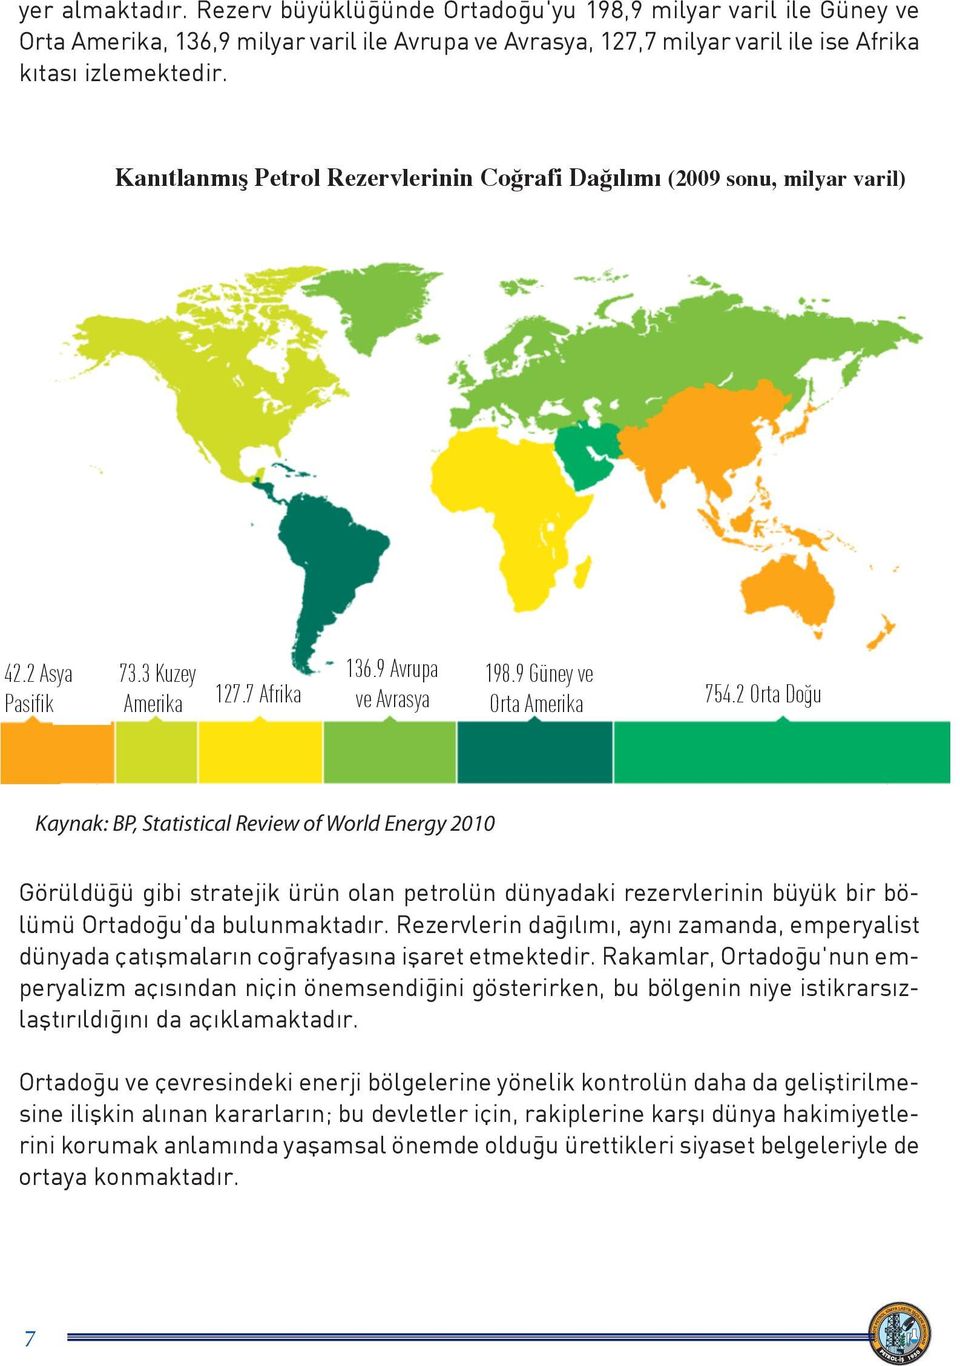 2 Orta Do u Kaynak: BP, Statistical Review of World Energy 2010 Görüldüğü gibi stratejik ürün olan petrolün dünyadaki rezervlerinin büyük bir bölümü Ortadoğu'da bulunmaktadır.